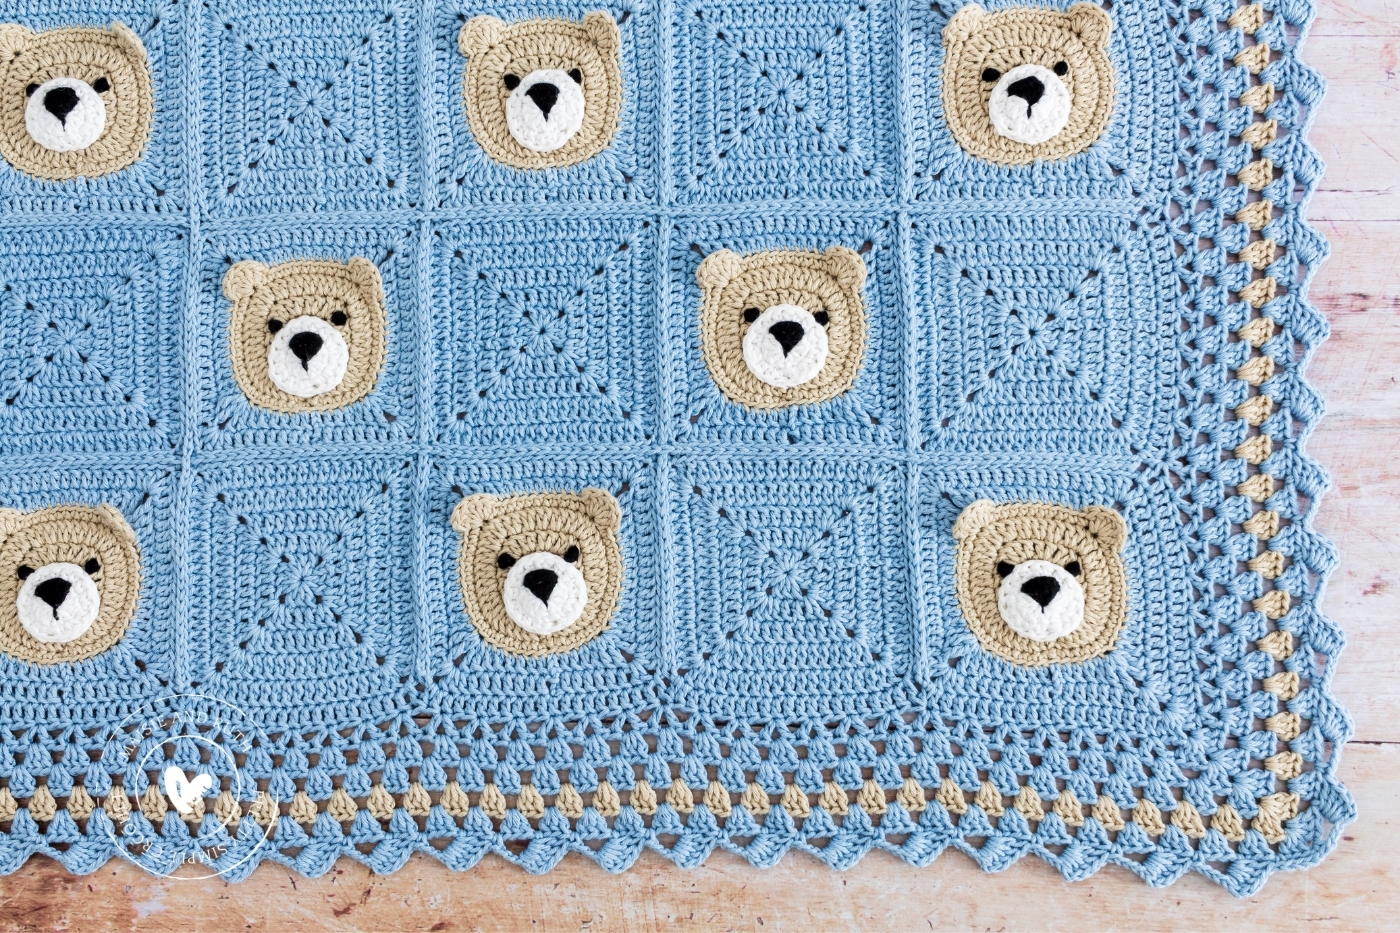 Bear Crochet Baby Blanket on light wood table